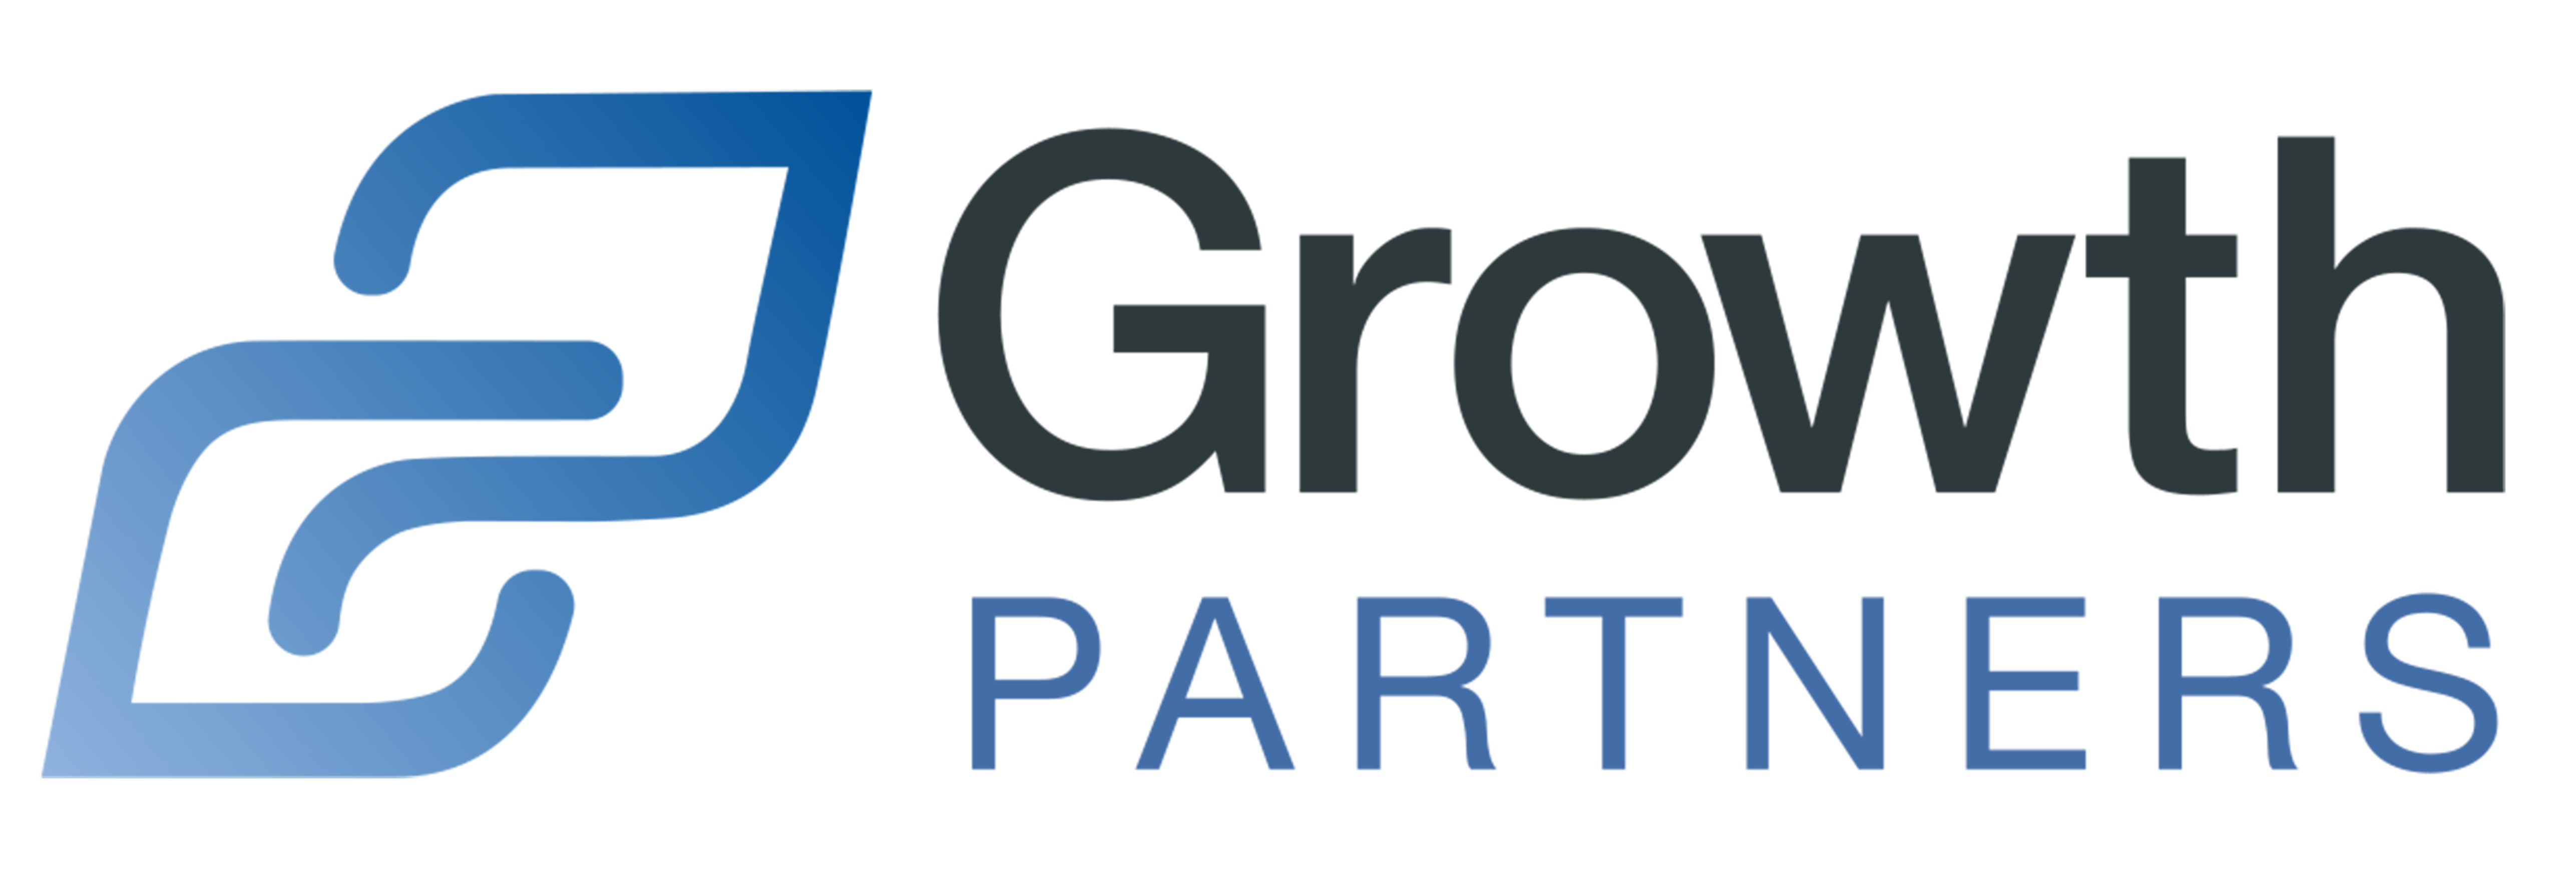 Growth Partners Management LTD